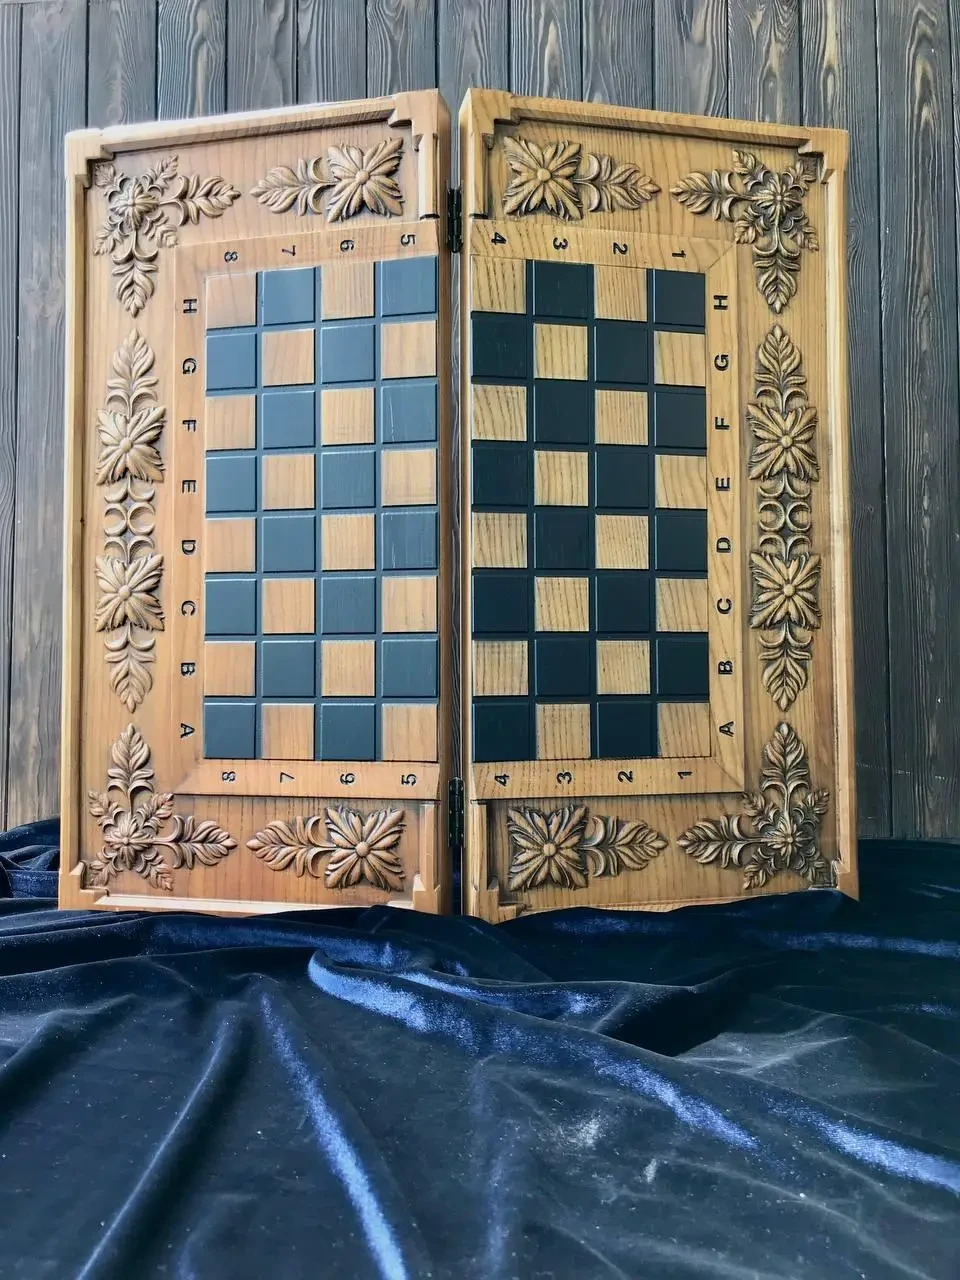 Оригінальні дерев'яні Шахи, шашки, нарди оформлені ручним різьбленням, розмір 68*32 см. Колір дуб